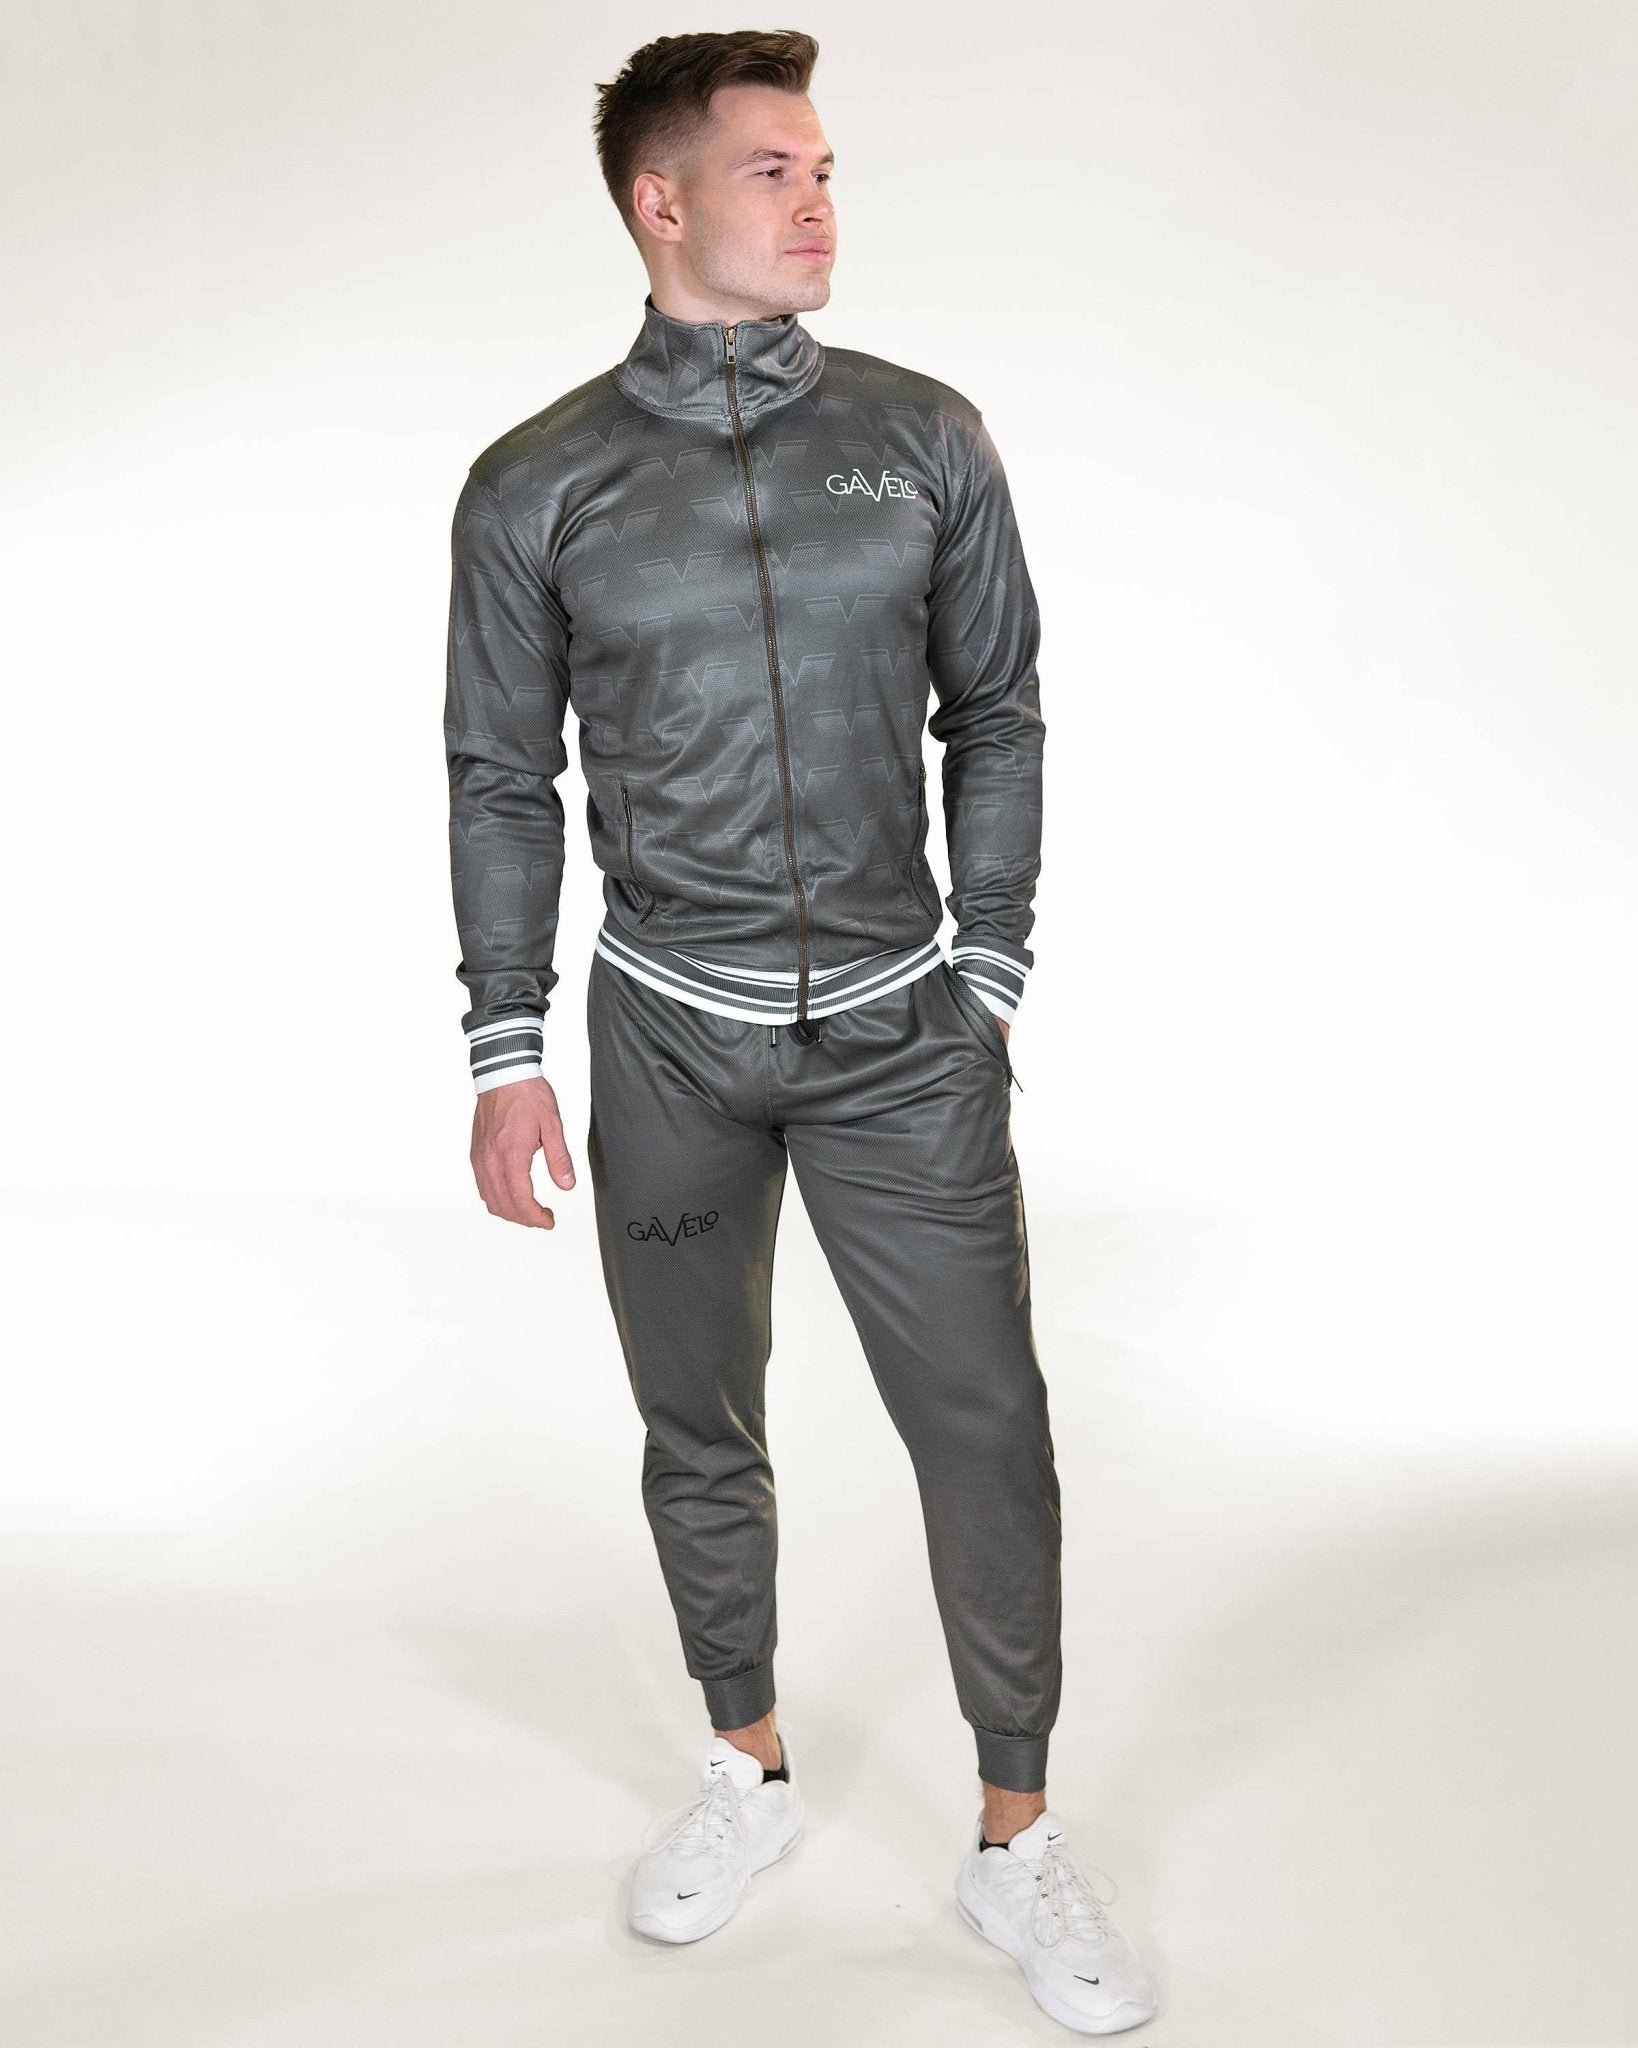 Gavelo Track Jacket - Carbon - Urban Gym Wear